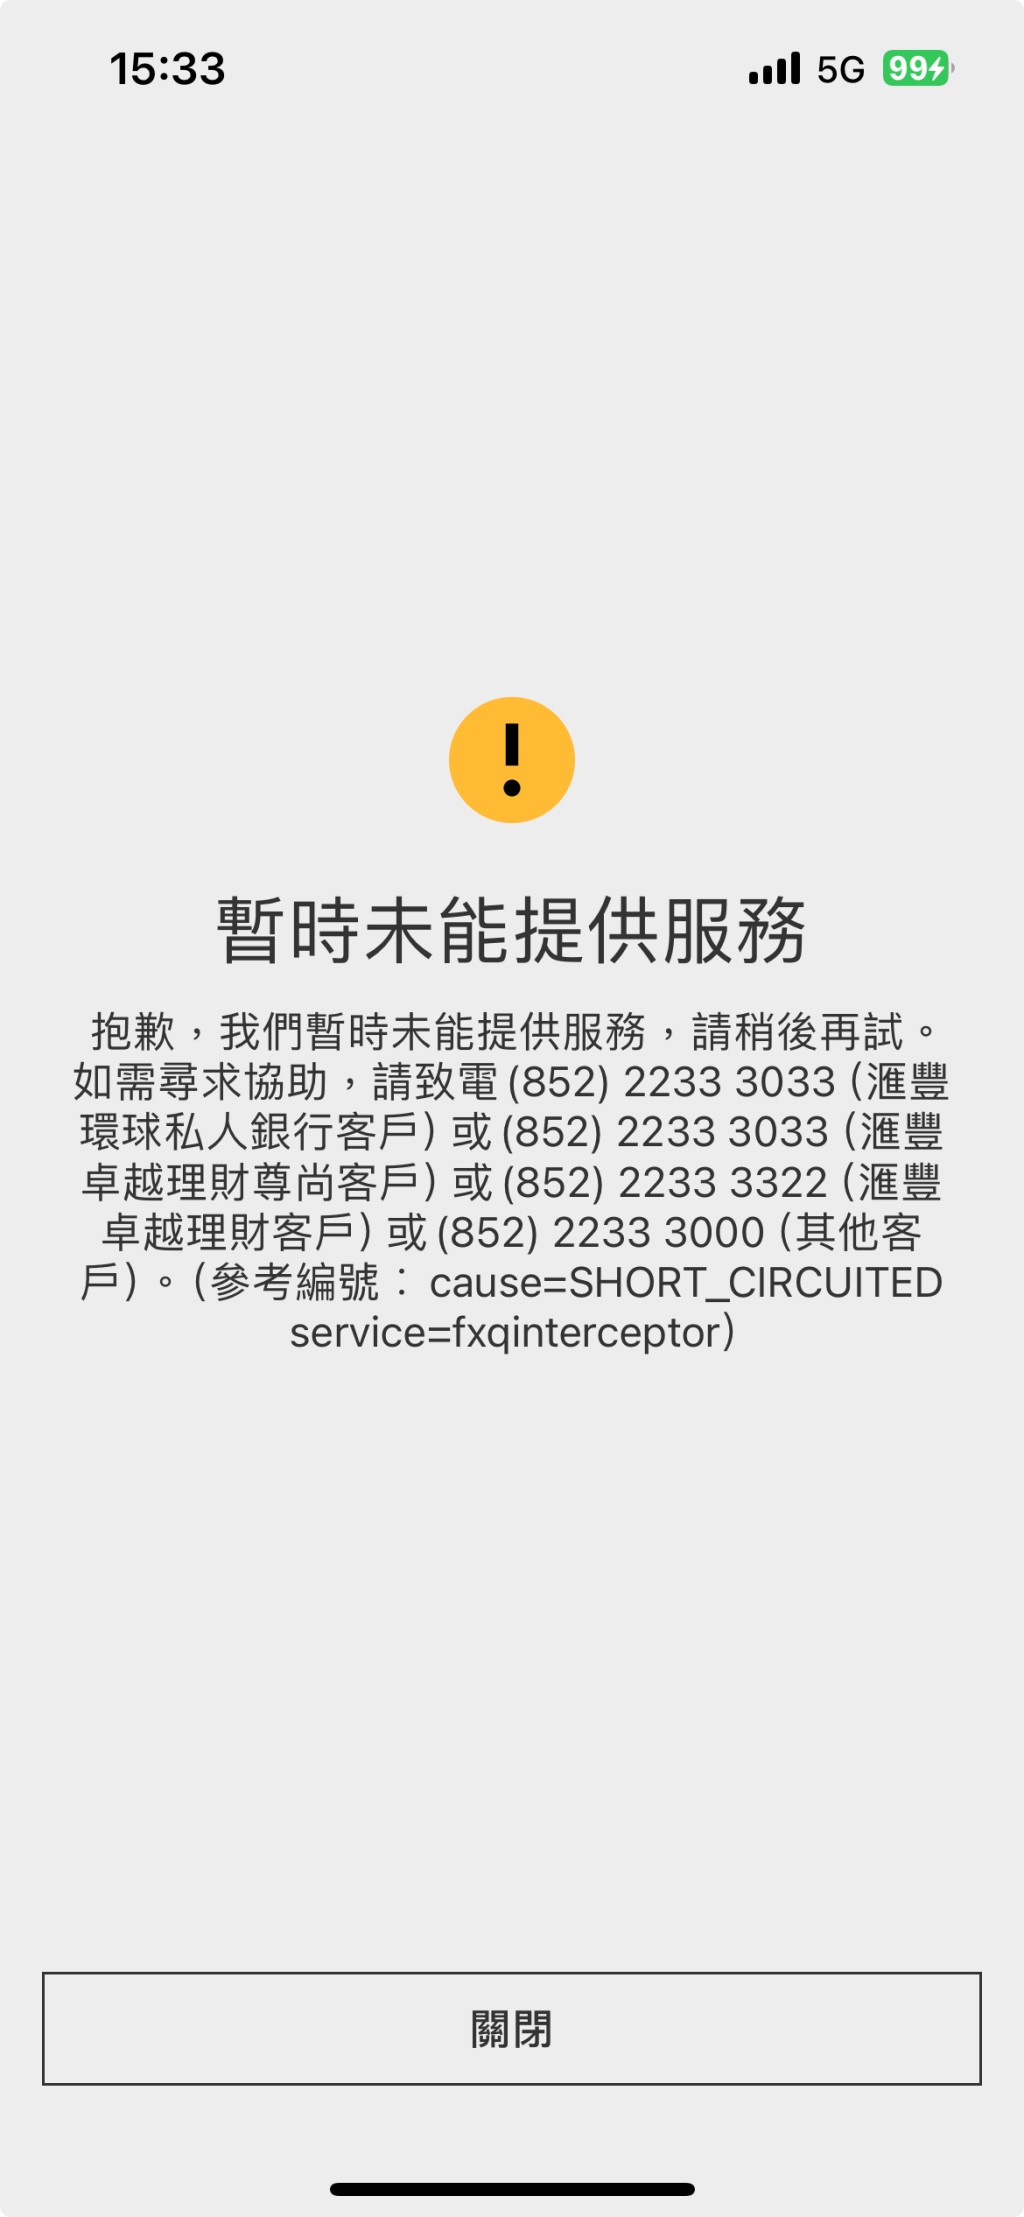 读者报料，今午使用滙丰银行网上外汇交易平台兑换日圆时，发现无法登入系统，画面出现「暂时未能提供服务」